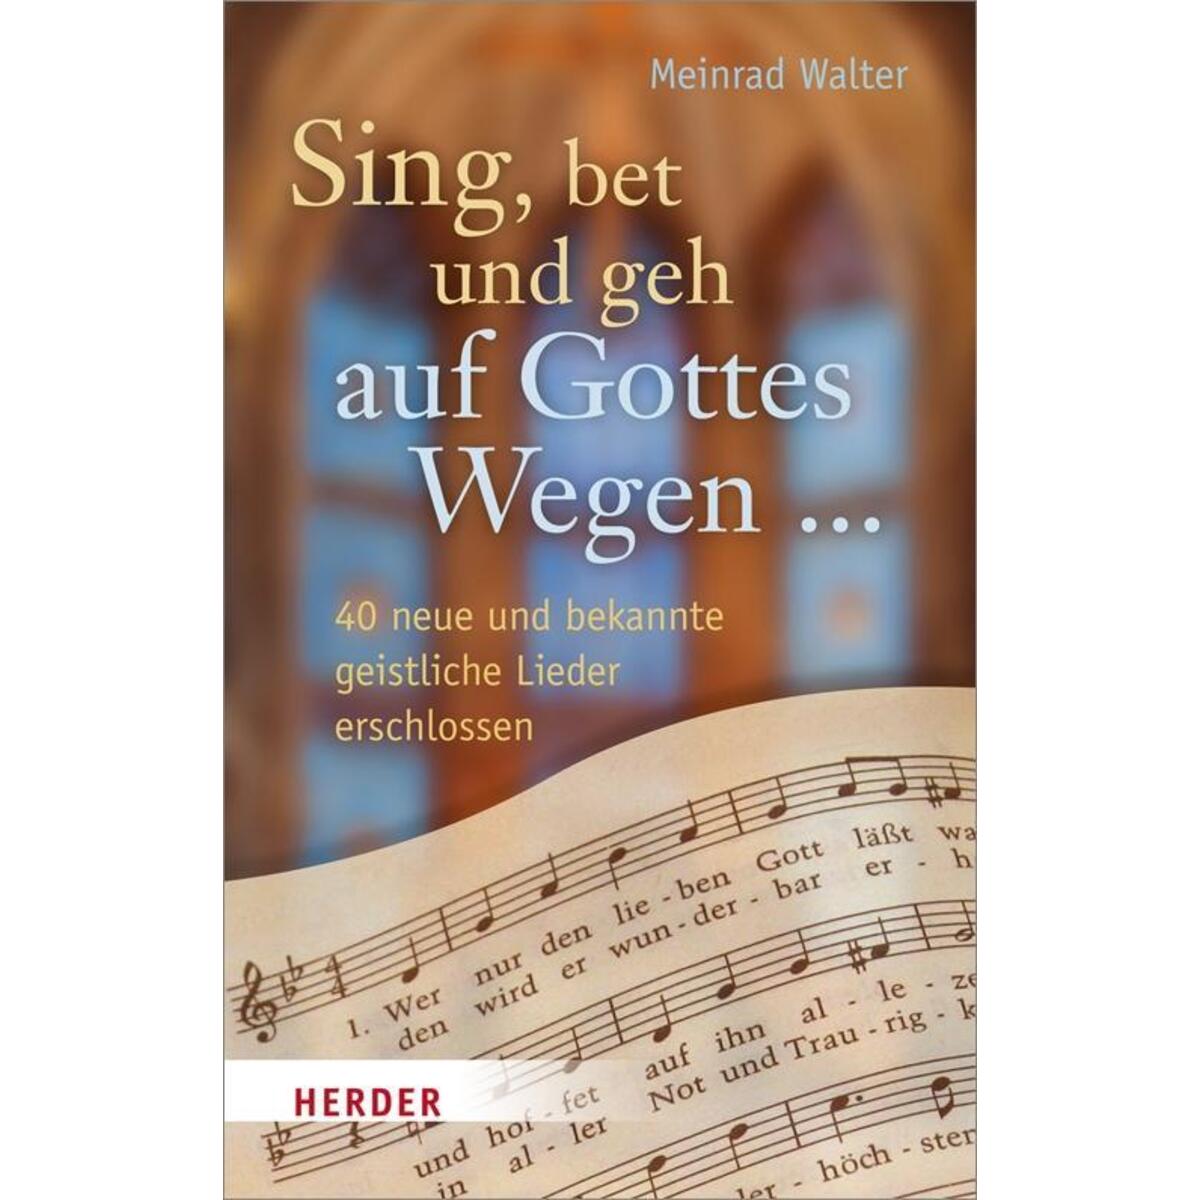 Sing, bet und geh auf Gottes Wegen ... von Herder Verlag GmbH